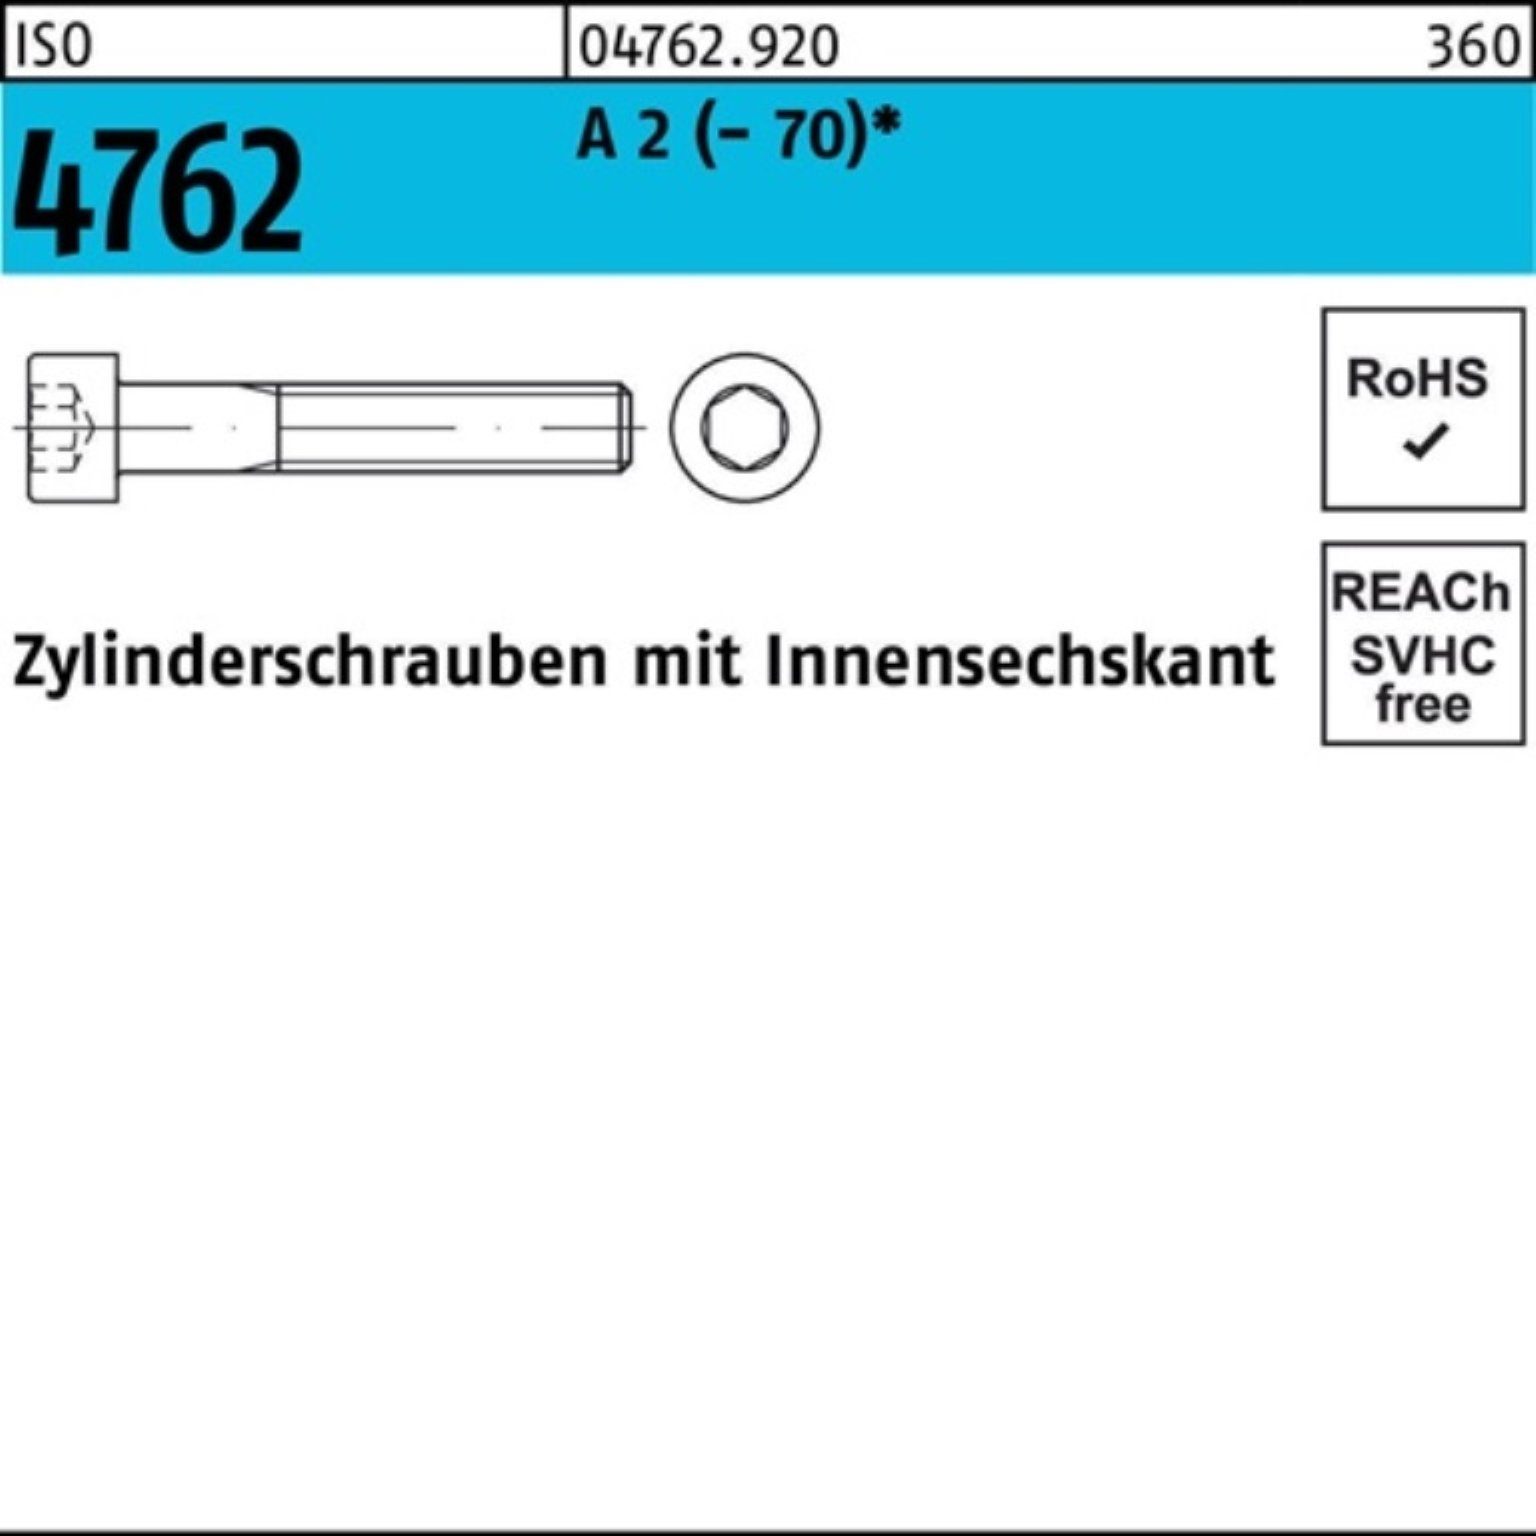 Zylinderschraube 1 M14x A 150 ISO Zylinderschraube 2 (70) S Innen-6kt Reyher Pack 4762 100er